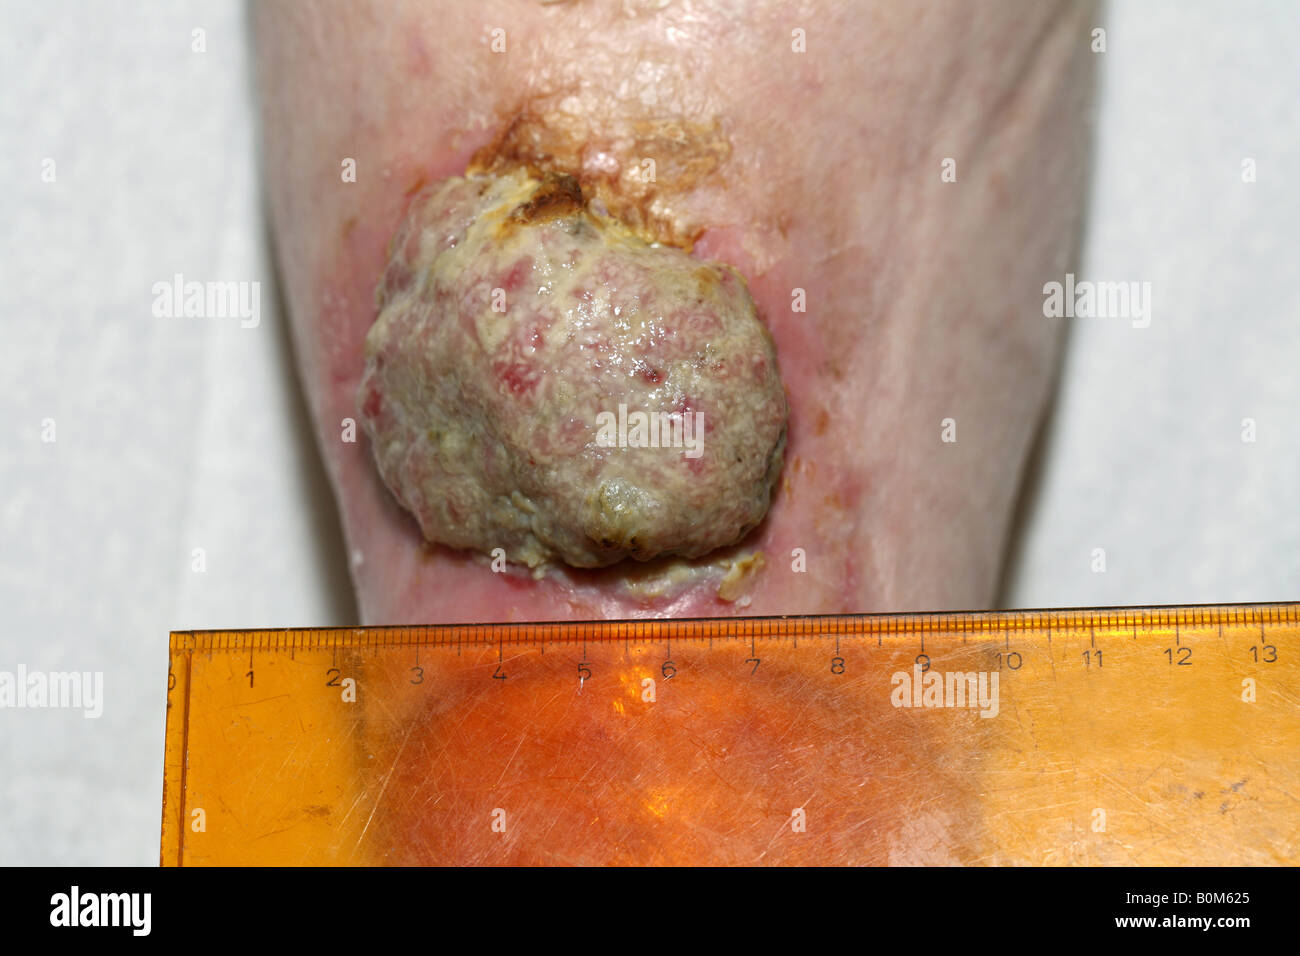 Une 5cm carcinome squamous de cellules malignes (cancer de la peau) sur la partie inférieure de la jambe d'une femme âgée. Banque D'Images